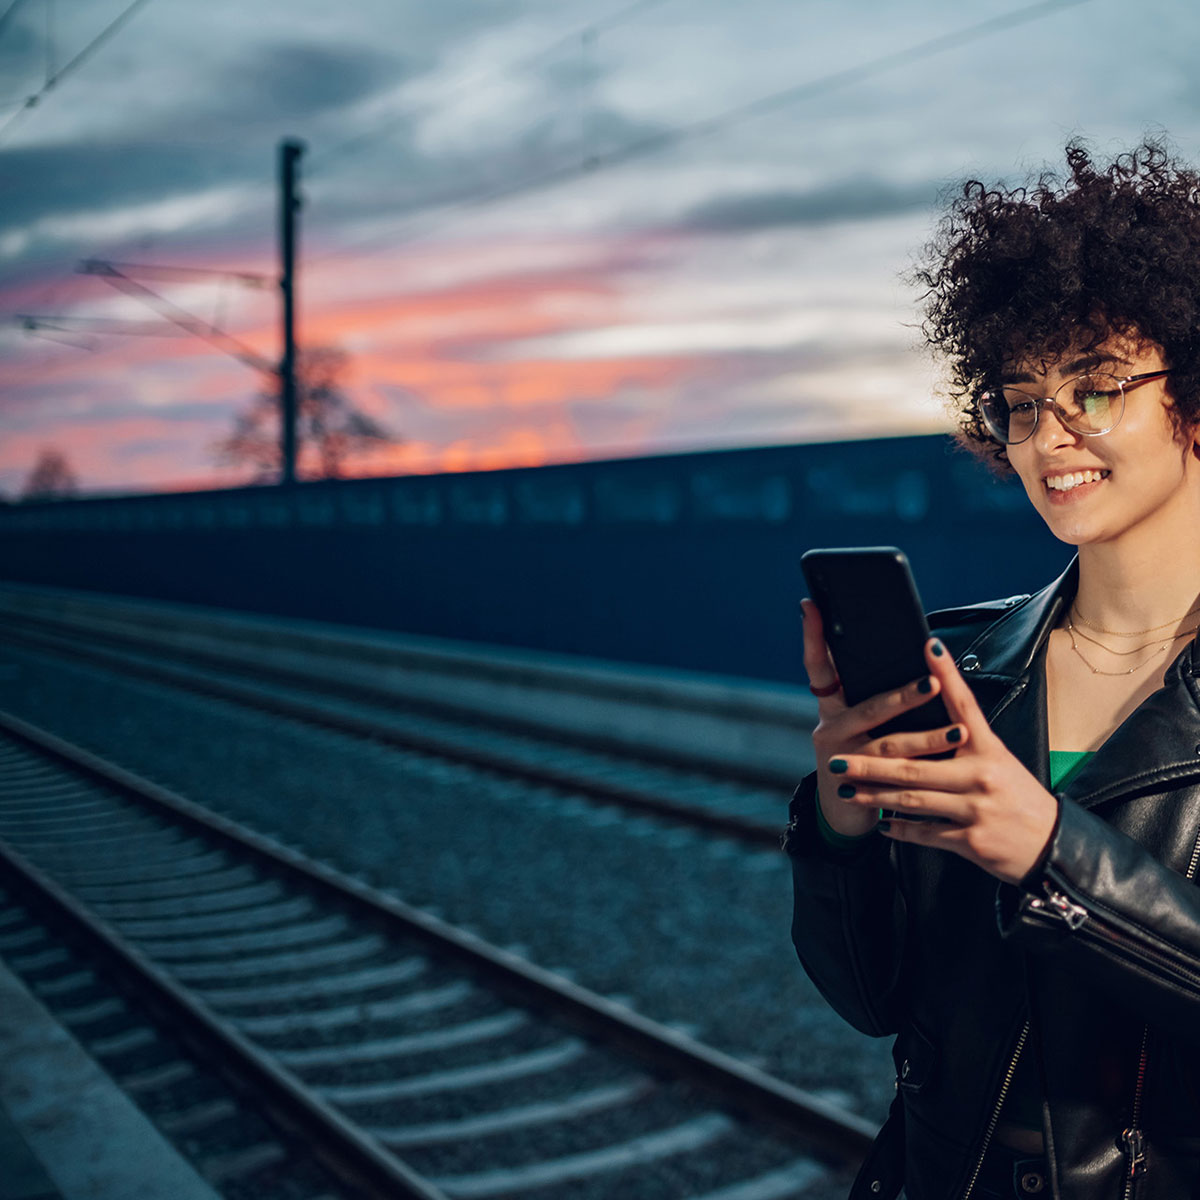 Frau steht am Bahnsteig und blickt auf ihr Smartphone